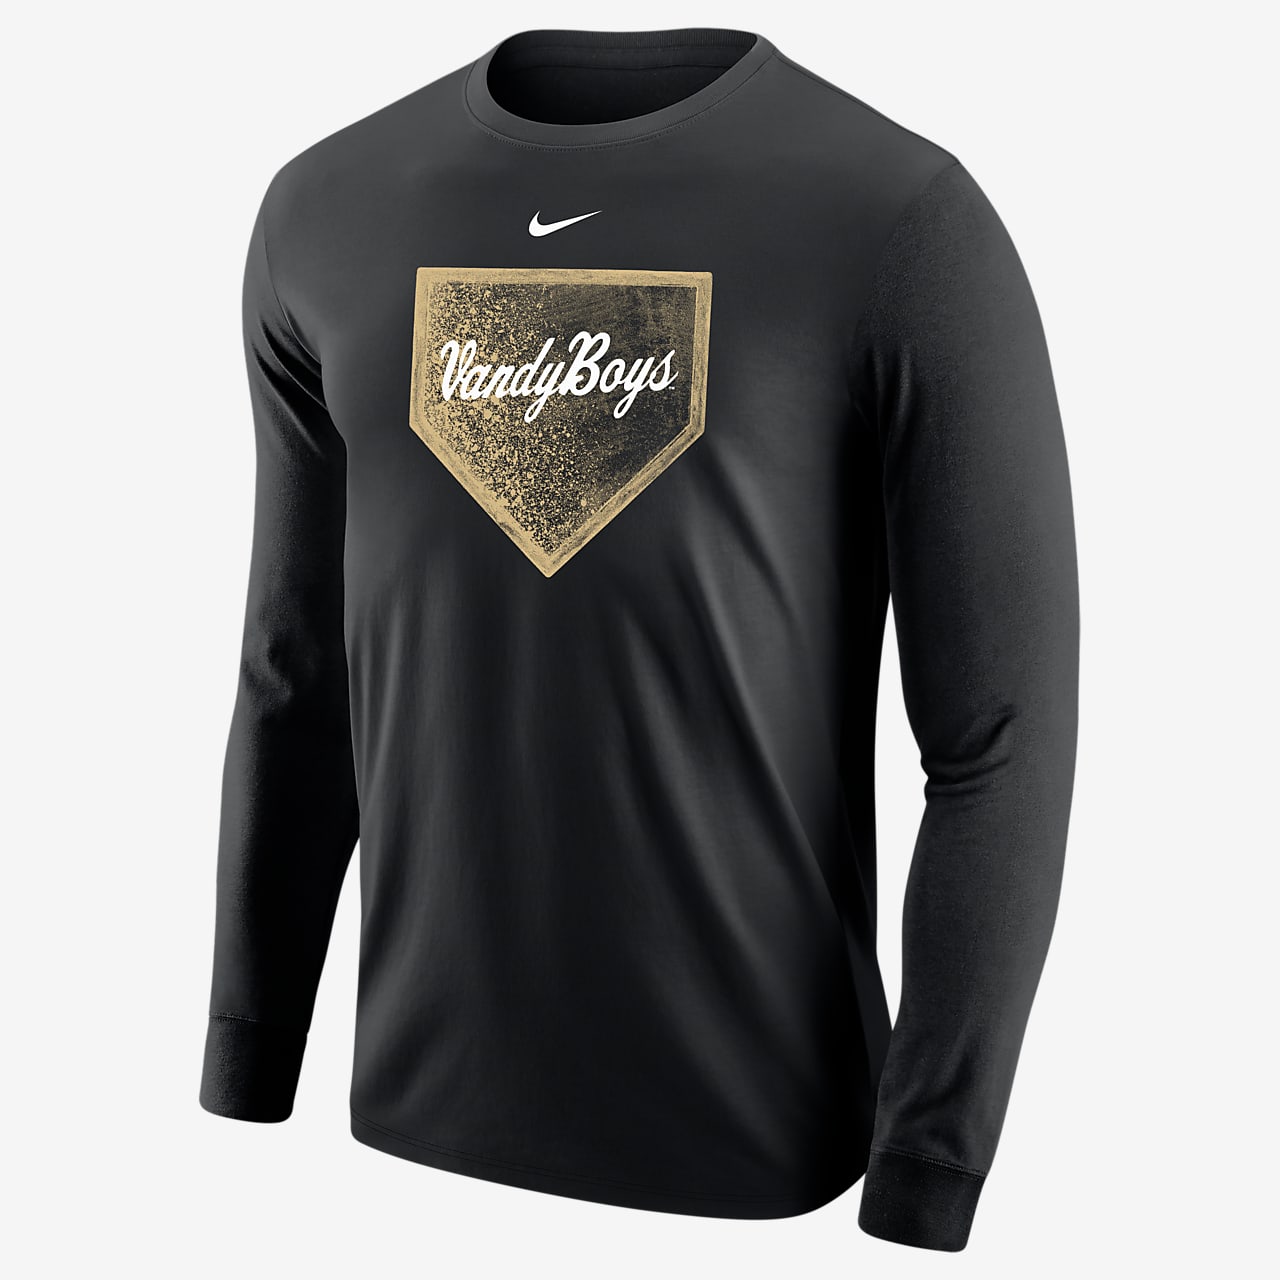 Byttehandel tilfredshed igennem Vanderbilt Men's Nike College Baseball Long-Sleeve T-Shirt. Nike.com